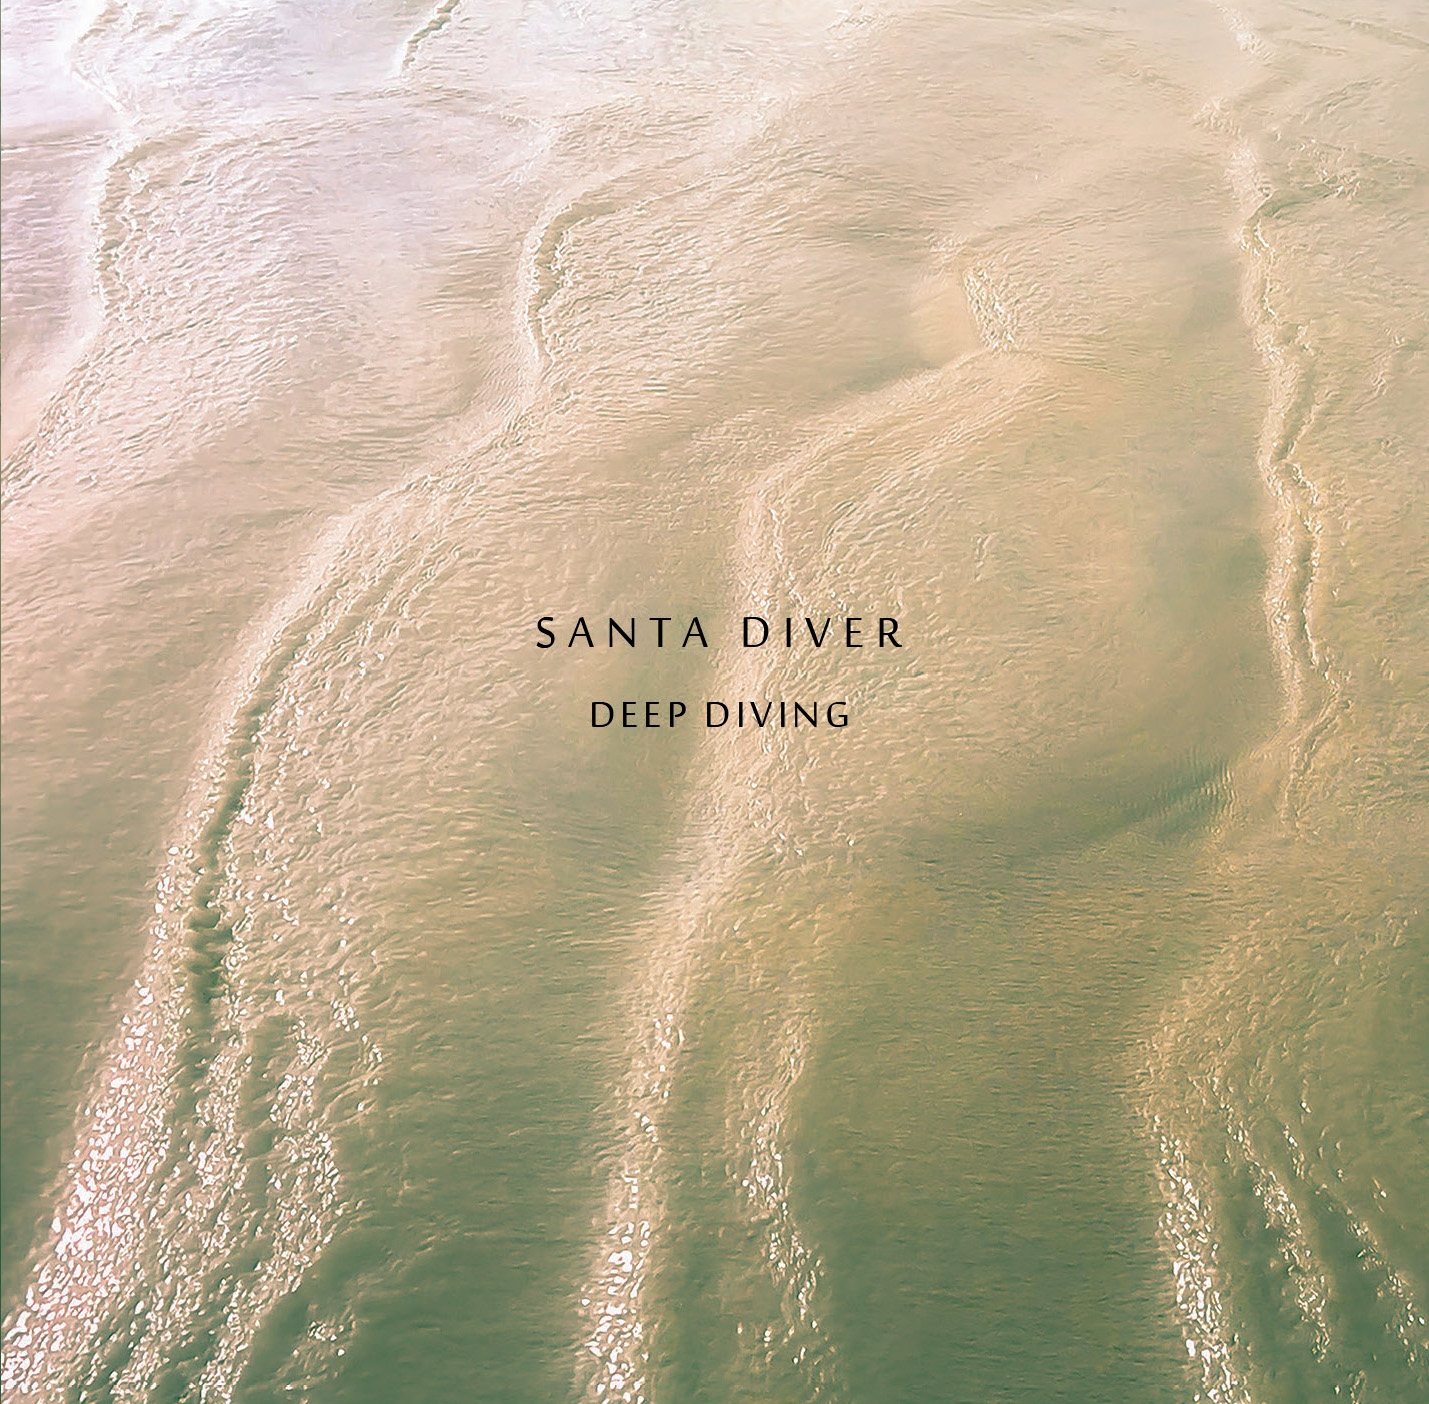 Santa Diver